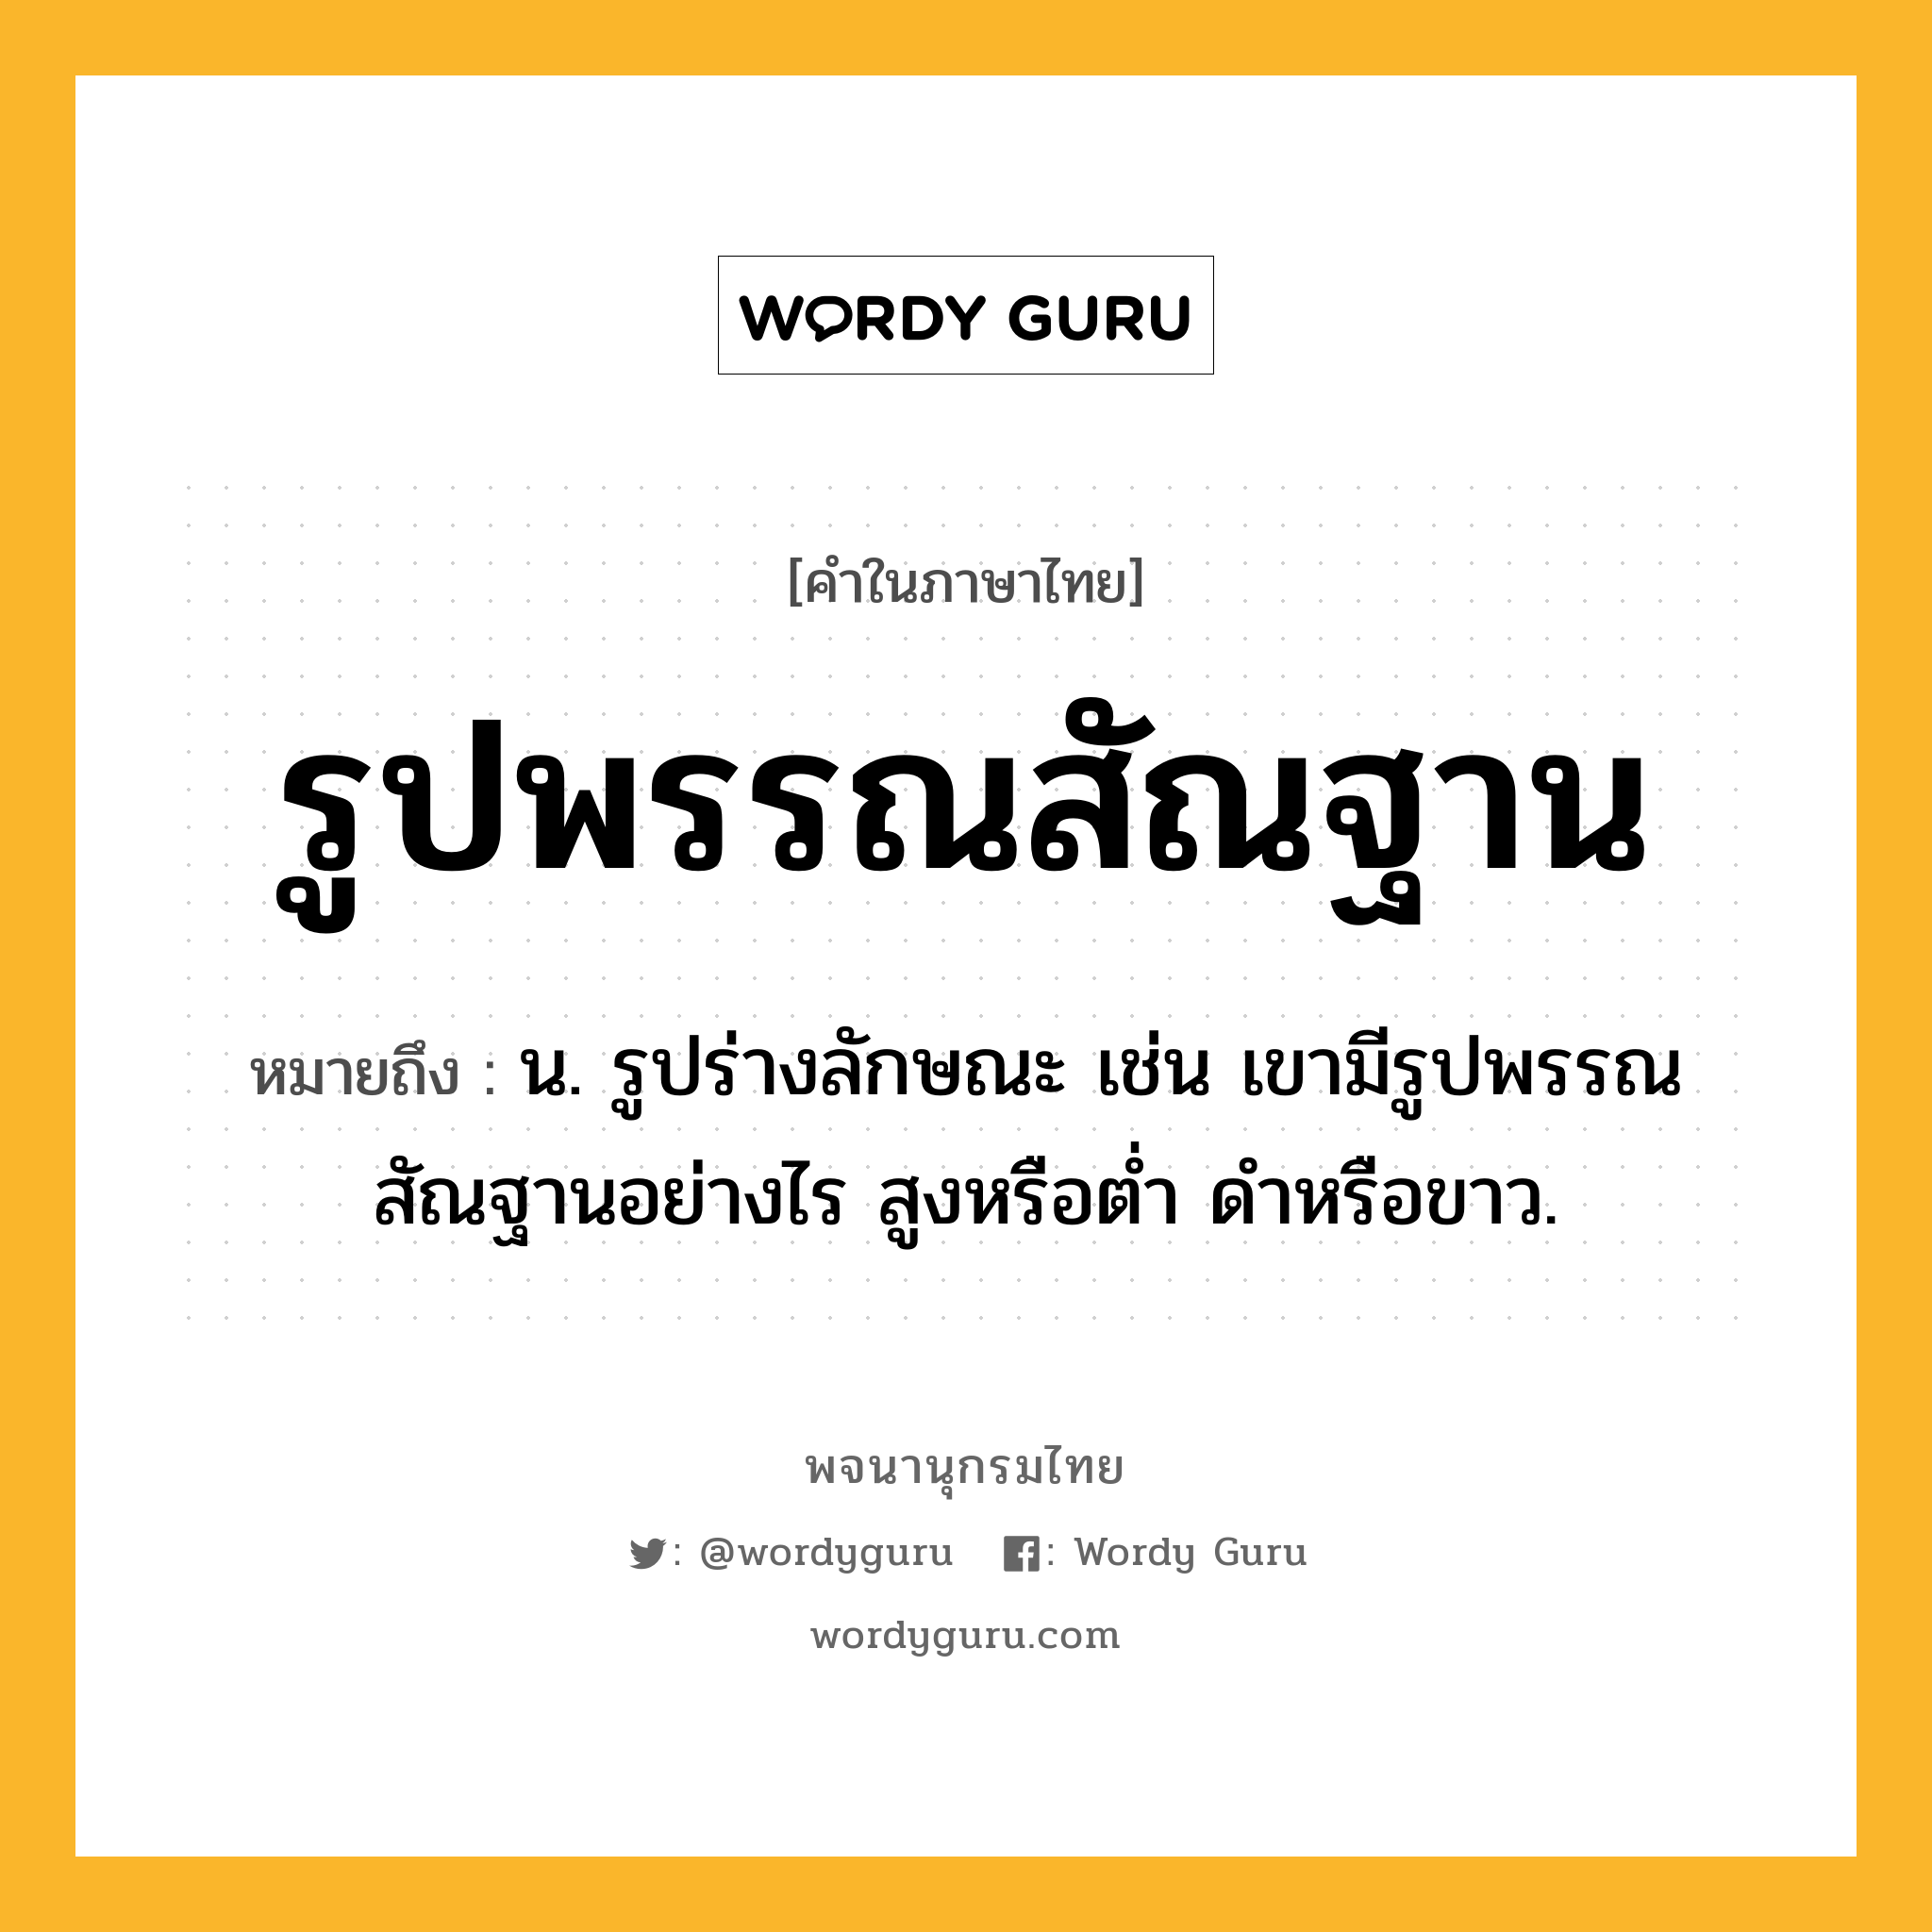 รูปพรรณสัณฐาน หมายถึงอะไร?, คำในภาษาไทย รูปพรรณสัณฐาน หมายถึง น. รูปร่างลักษณะ เช่น เขามีรูปพรรณสัณฐานอย่างไร สูงหรือต่ำ ดำหรือขาว.